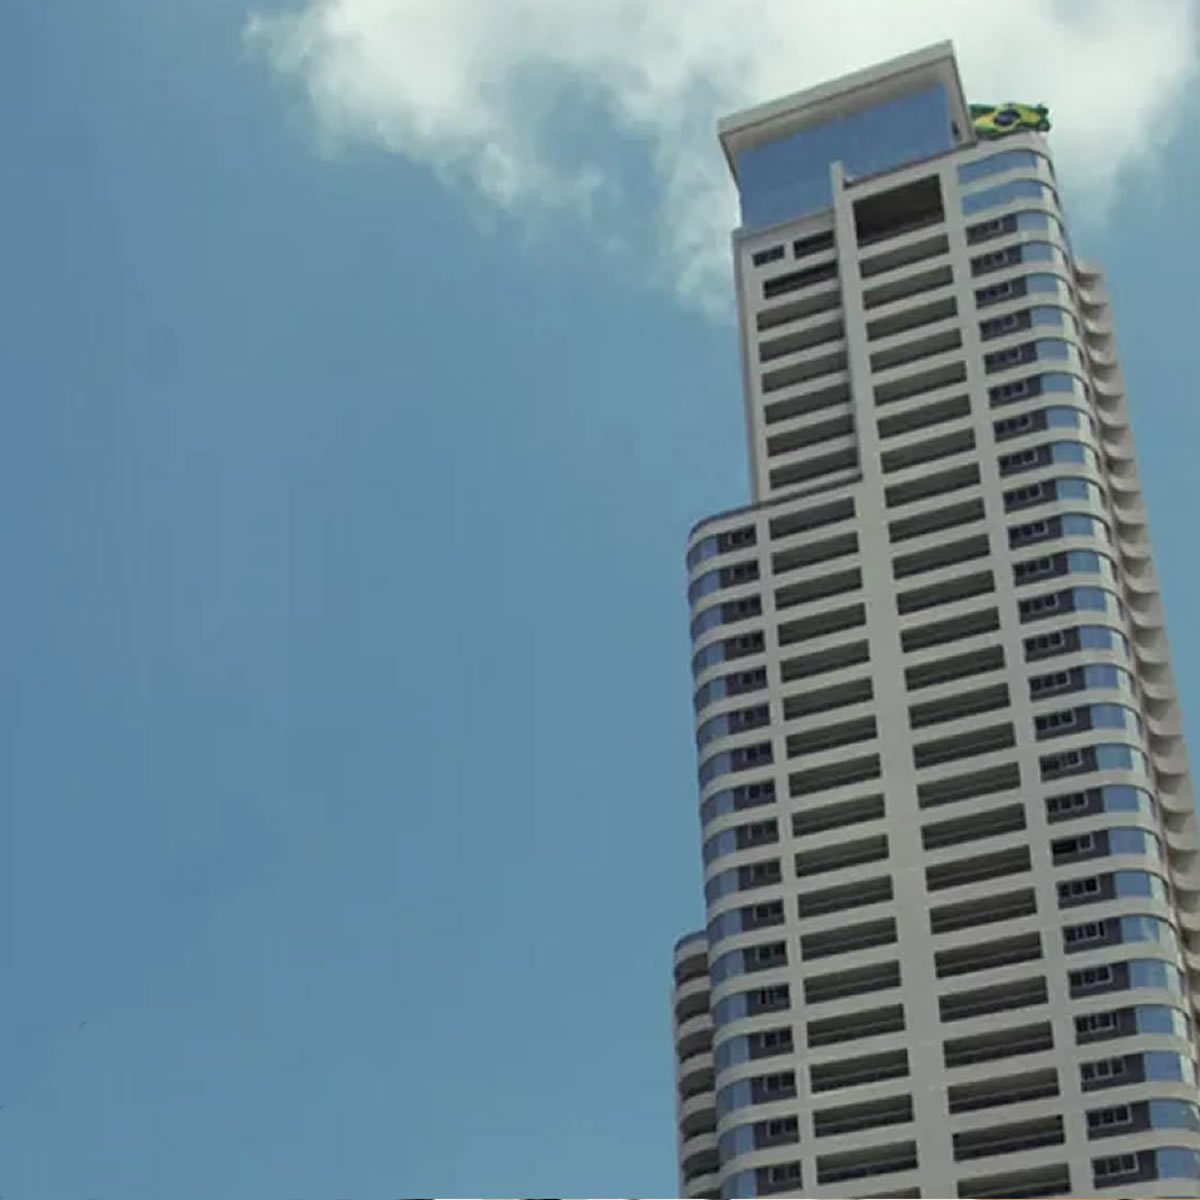 João Pessoa tem 2º prédio mais alto do Brasil e 1º do Nordeste, aponta Skyscraper Center